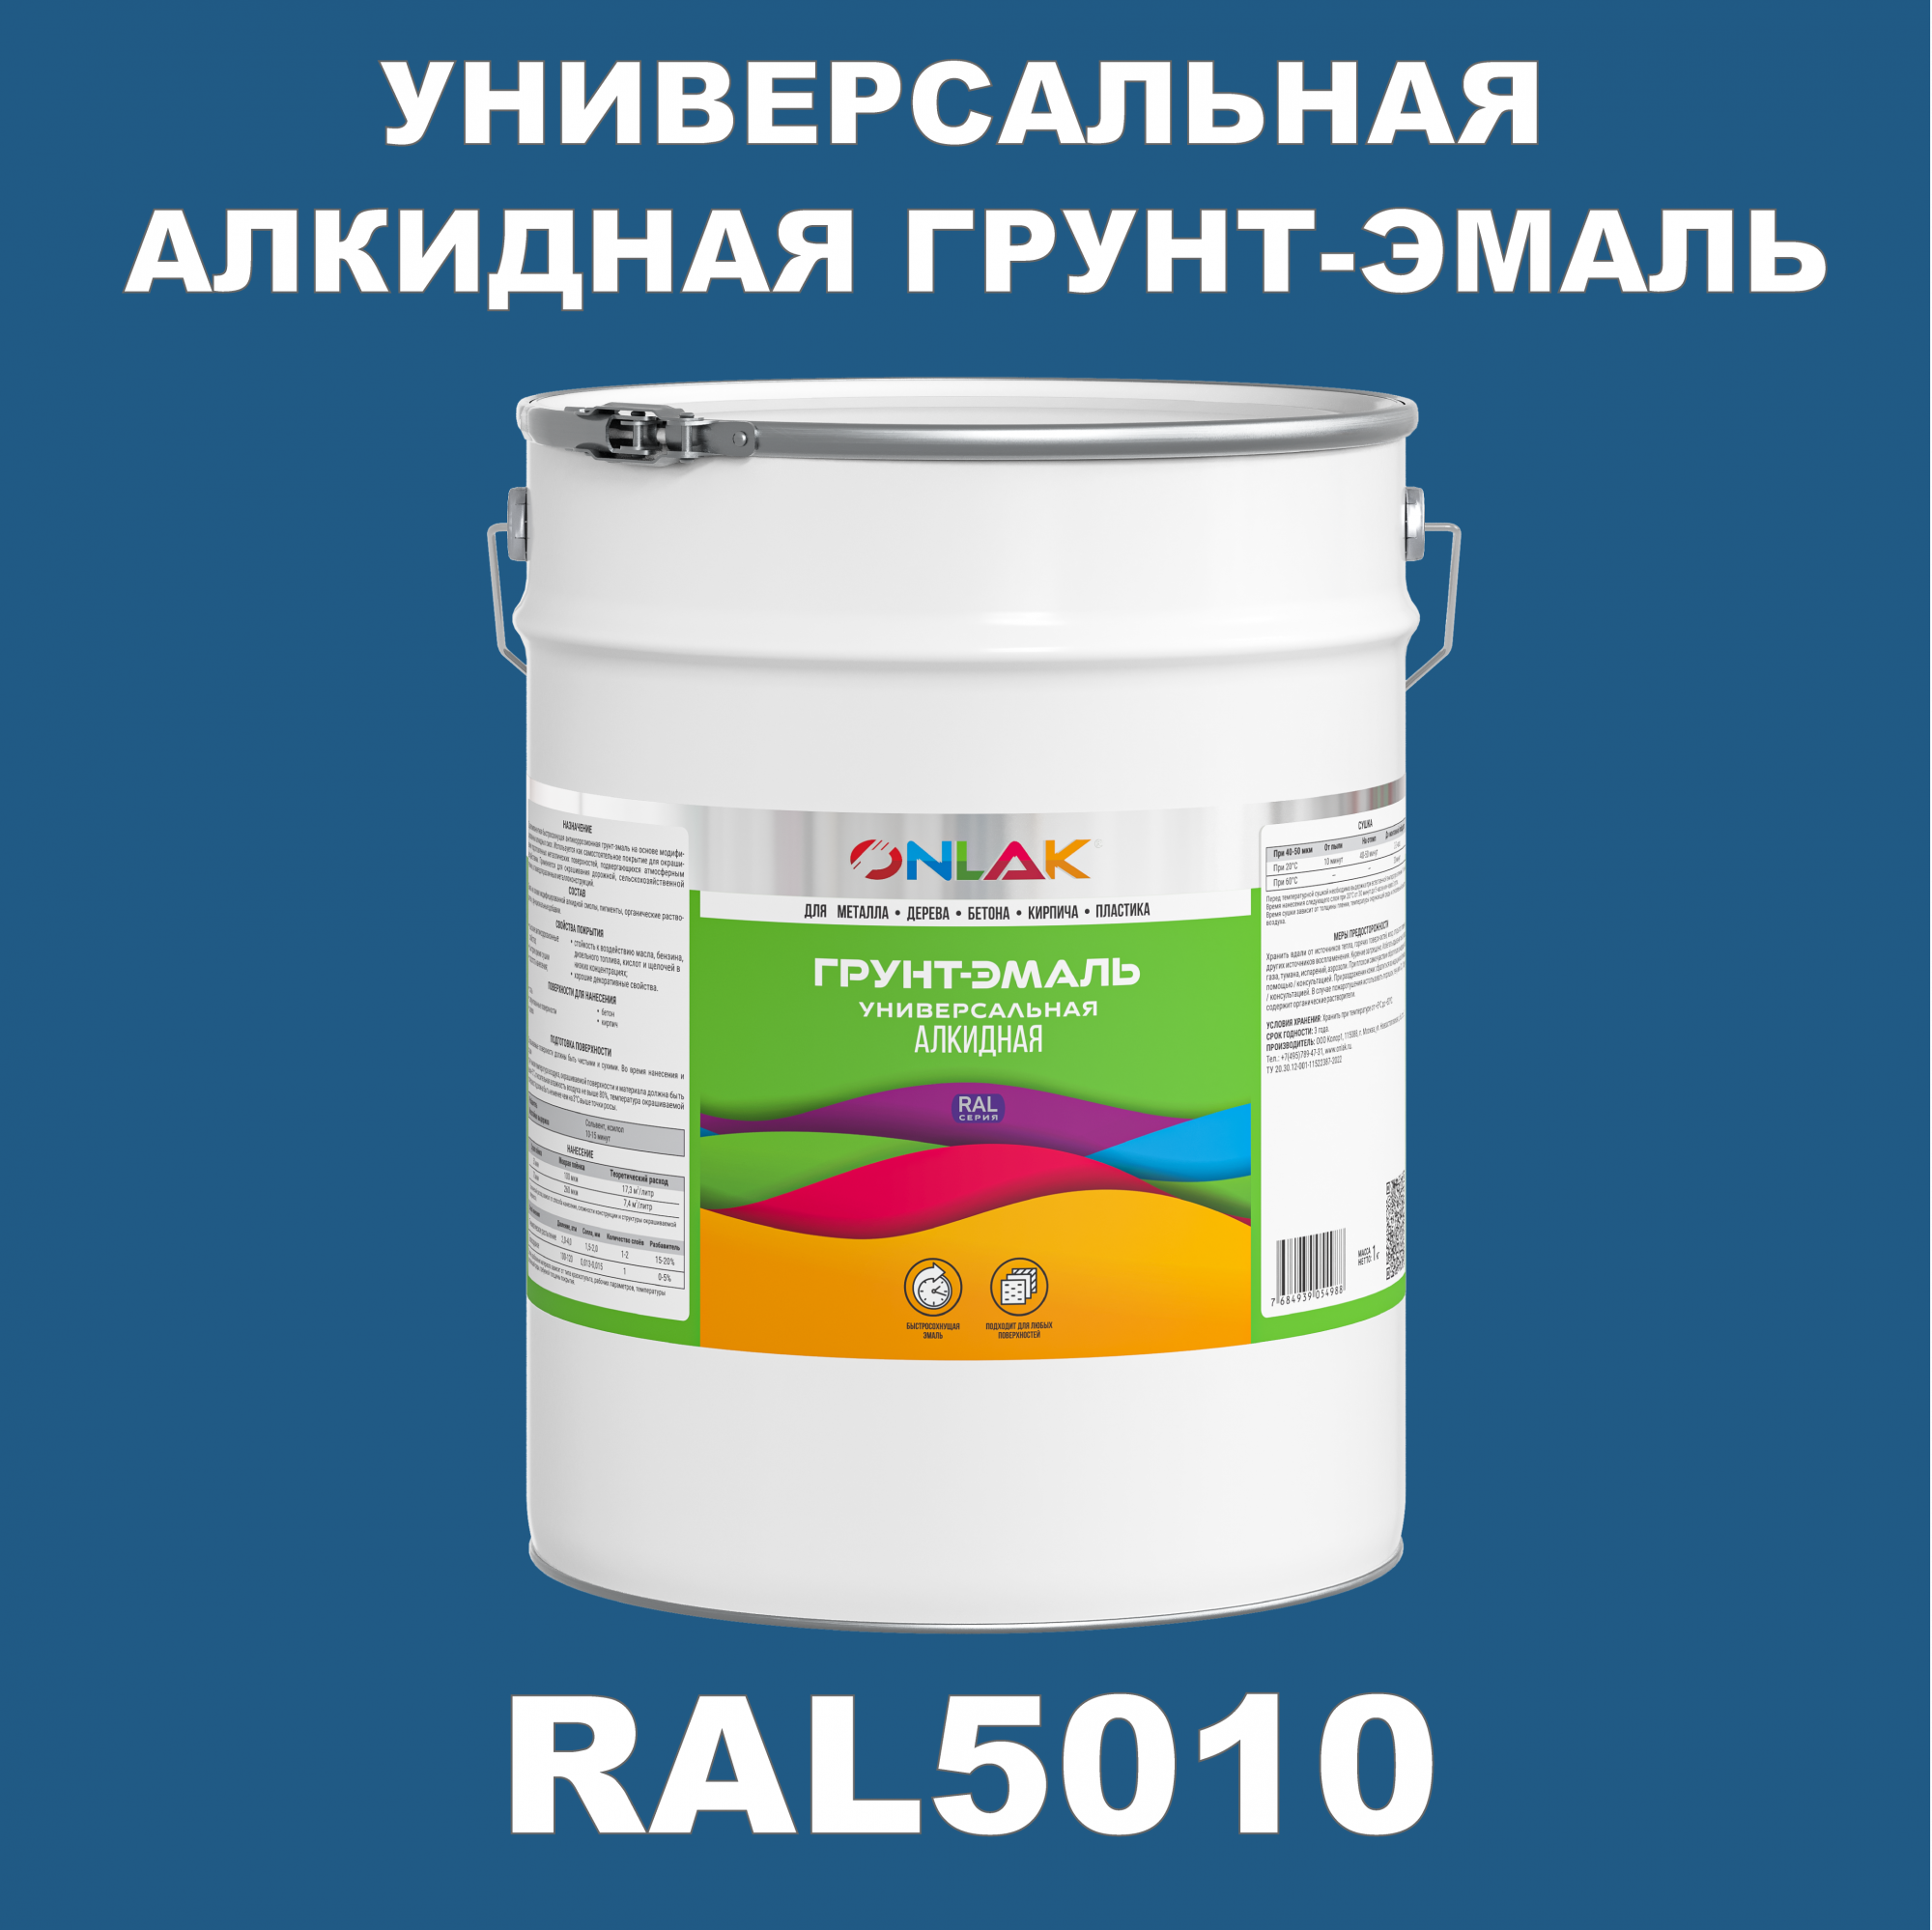 Грунт-эмаль ONLAK 1К RAL5010 антикоррозионная алкидная по металлу по ржавчине 20 кг специальная антикоррозионная грунт эмаль certa